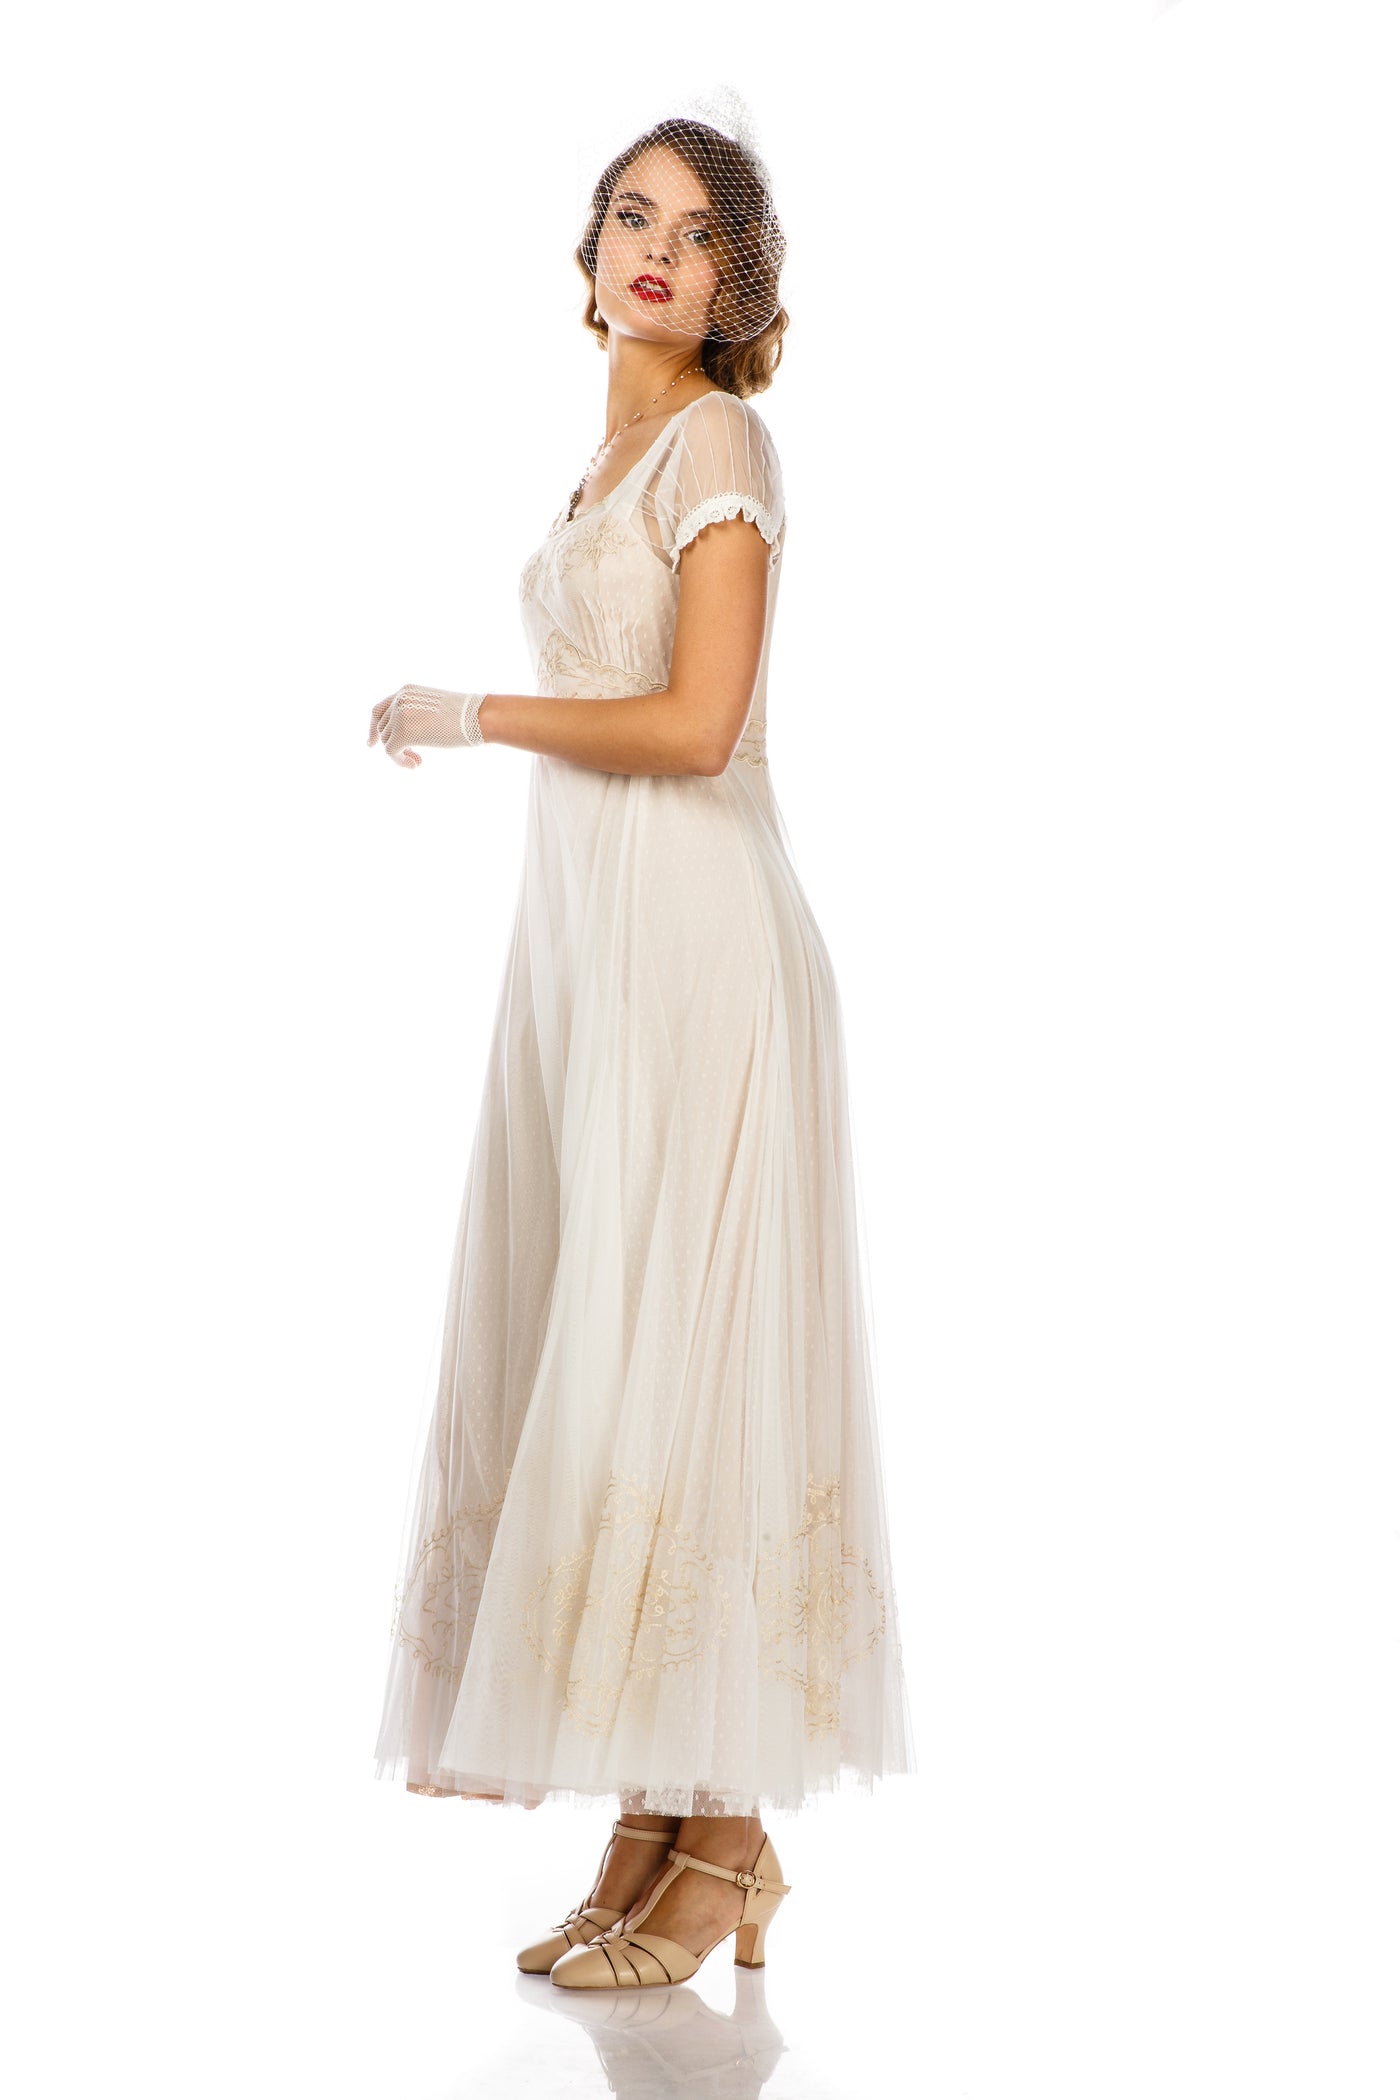 Parisienne Vintage Elegance Wedding Gown in Ivory